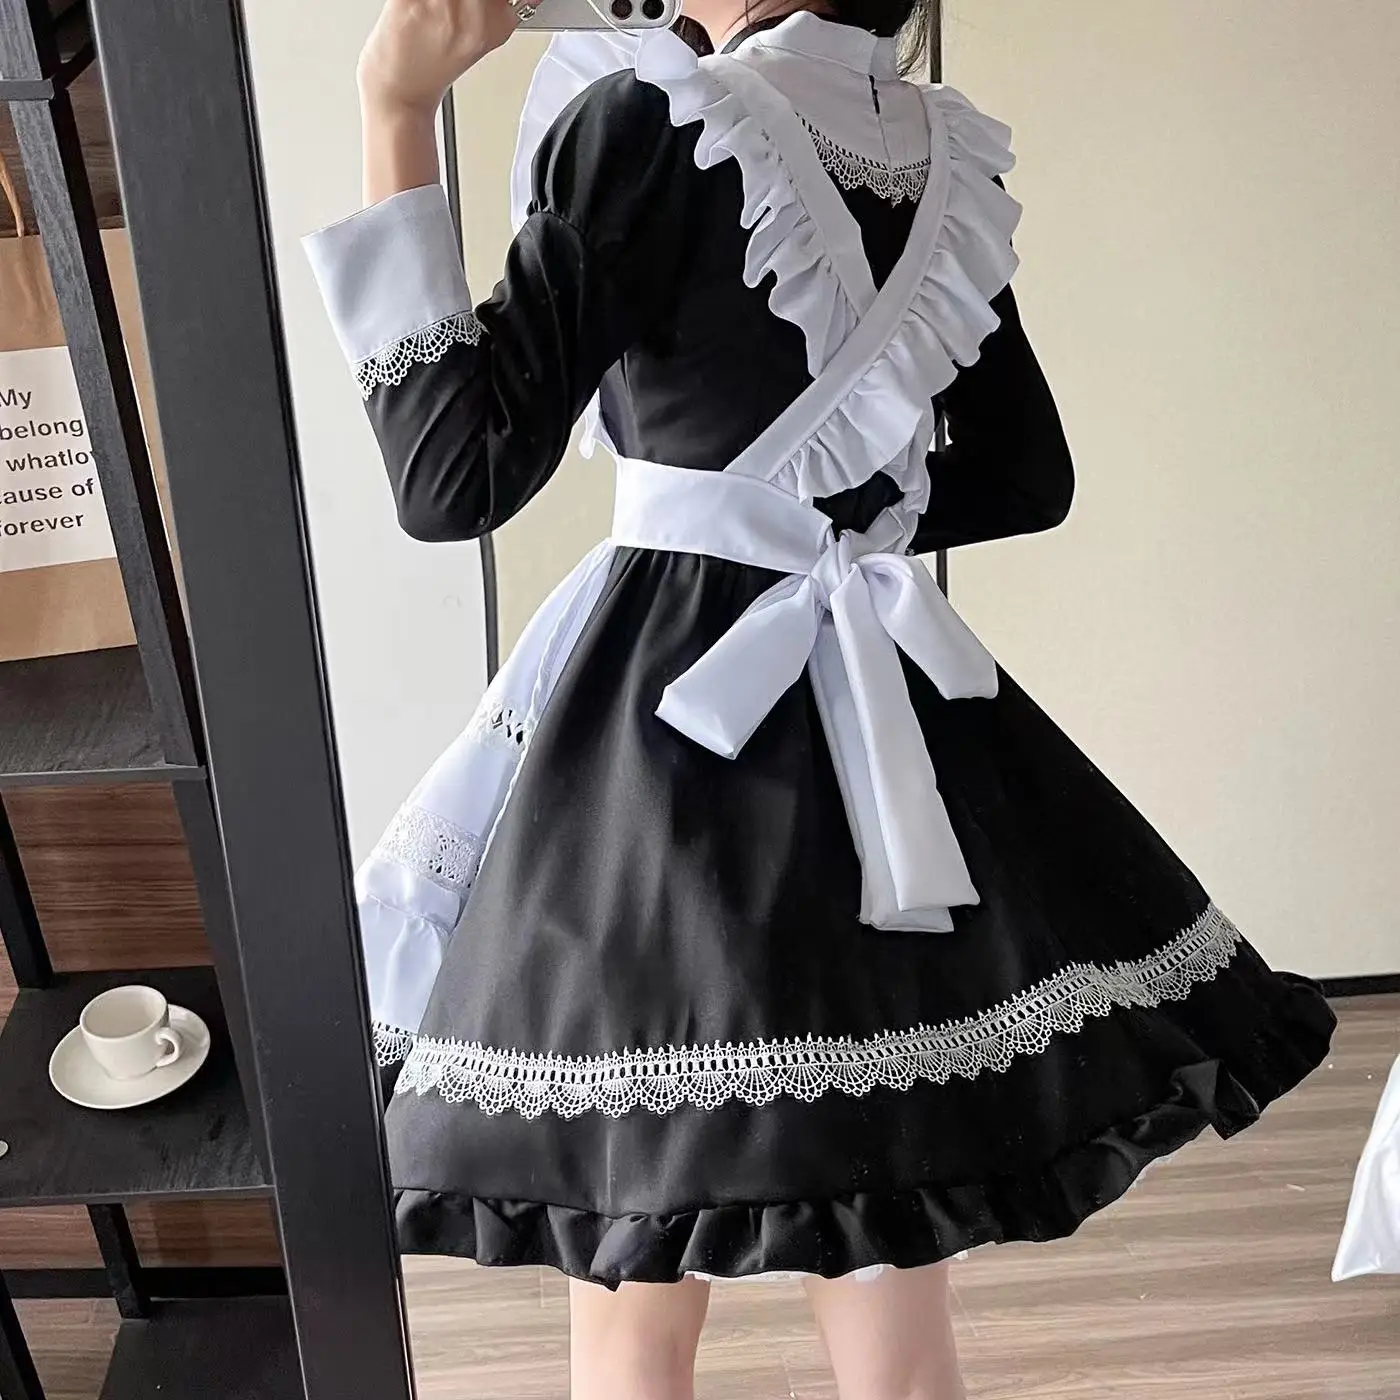 Britânico Lolita Maid Vestido Cosplay Trajes Anime Figura Vestido De  Halloween Trajes Para Mulheres Masculino Terno Role Play Roupas Uniforme -  Trajes De Cosplay - AliExpress